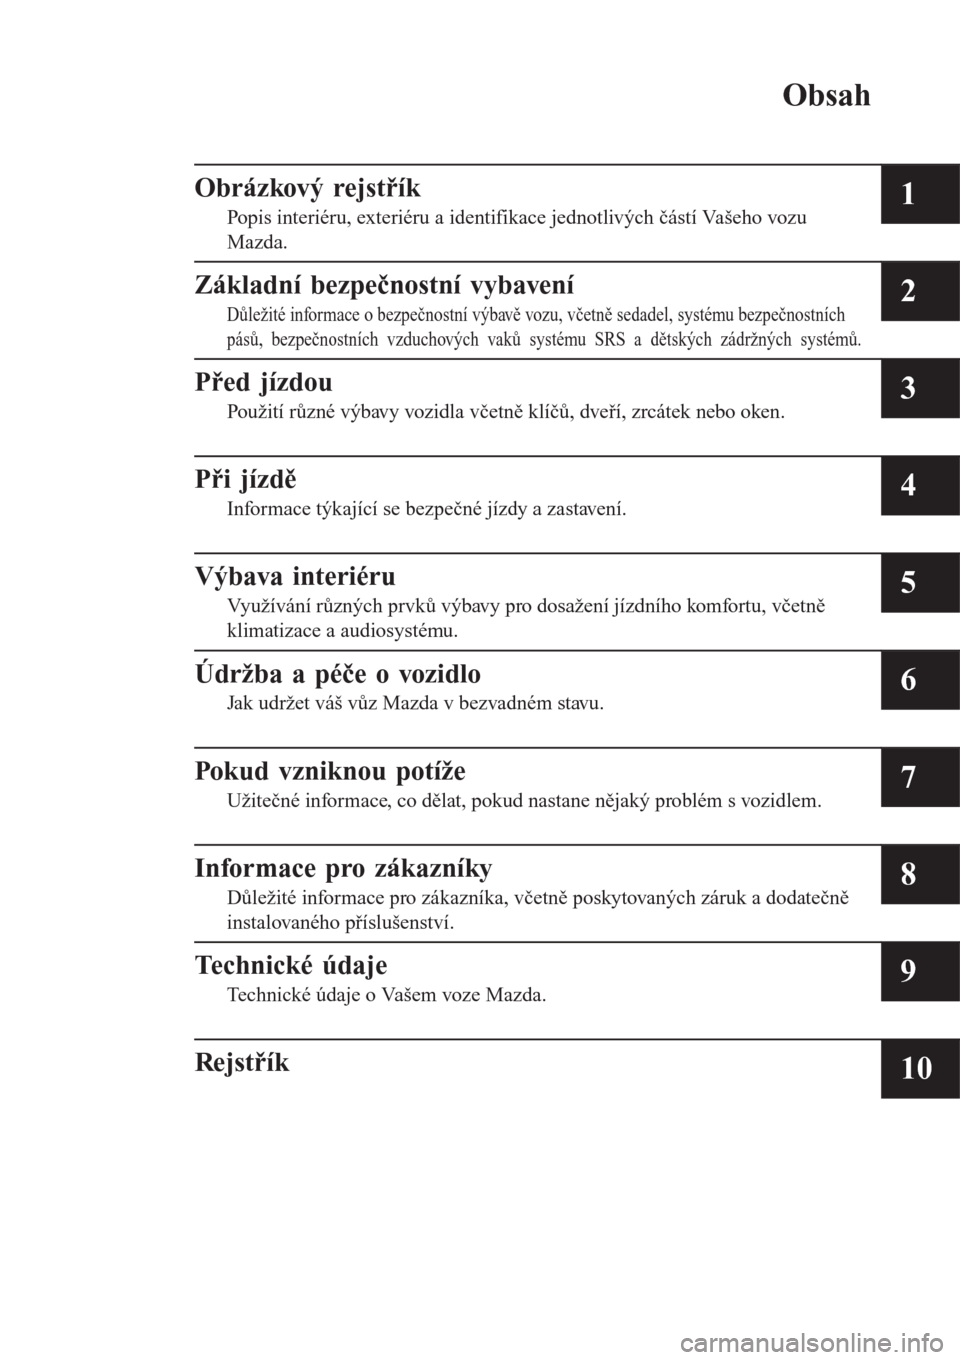 MAZDA MODEL CX-3 2015  Návod k obsluze (in Czech) Obsah
Obrázkový rejstřík
Popis interiéru, exteriéru a identifikace jednotlivých částí Vašeho vozu
Mazda.1
Základní bezpečnostní vybavení
Důležité informace o bezpečnostní výbavě